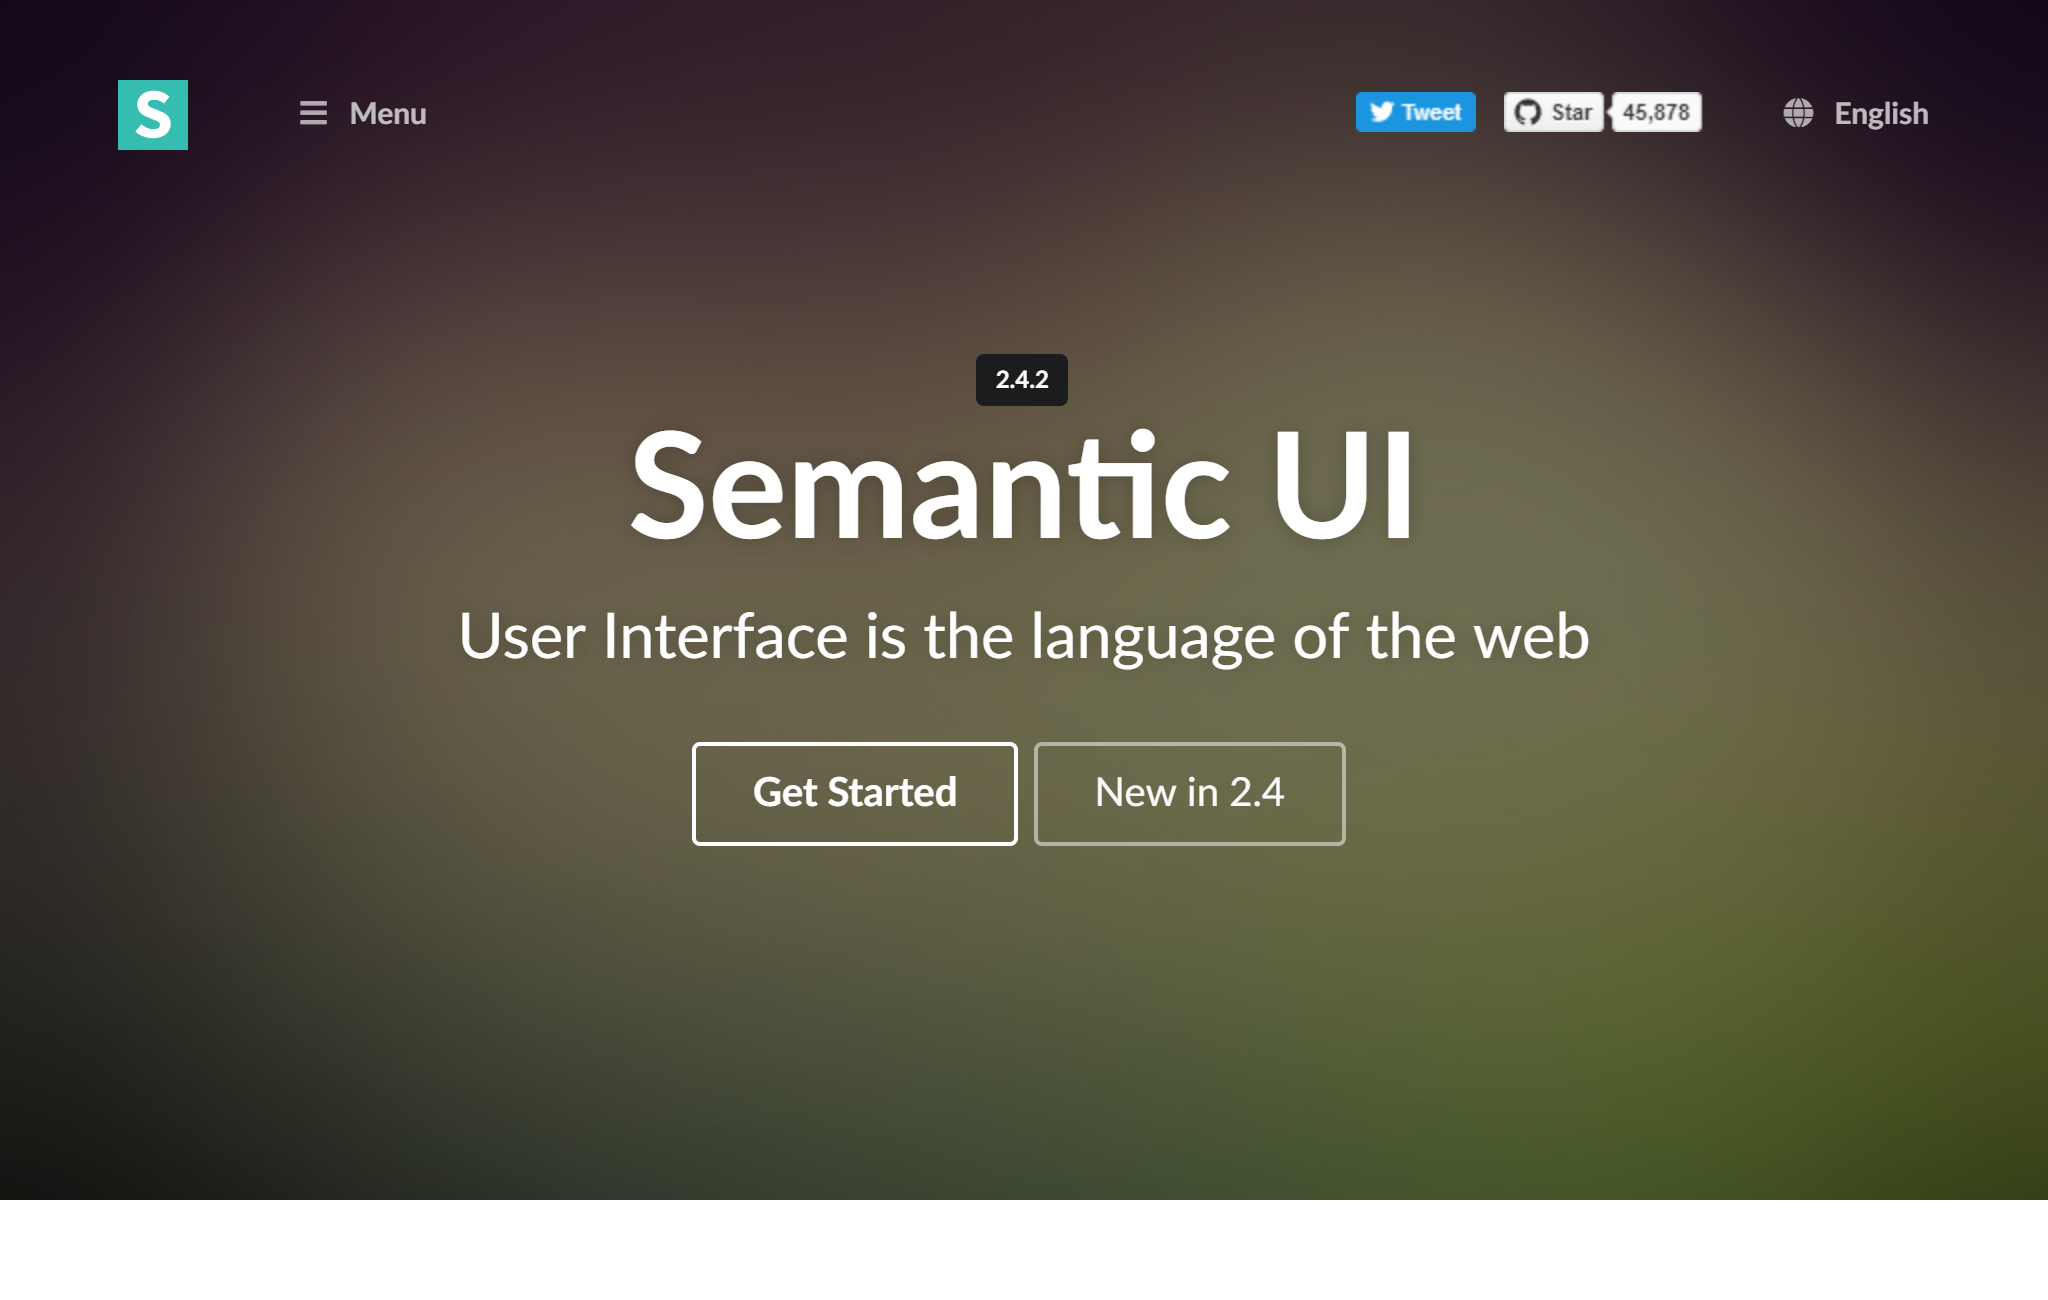 Semantic UI